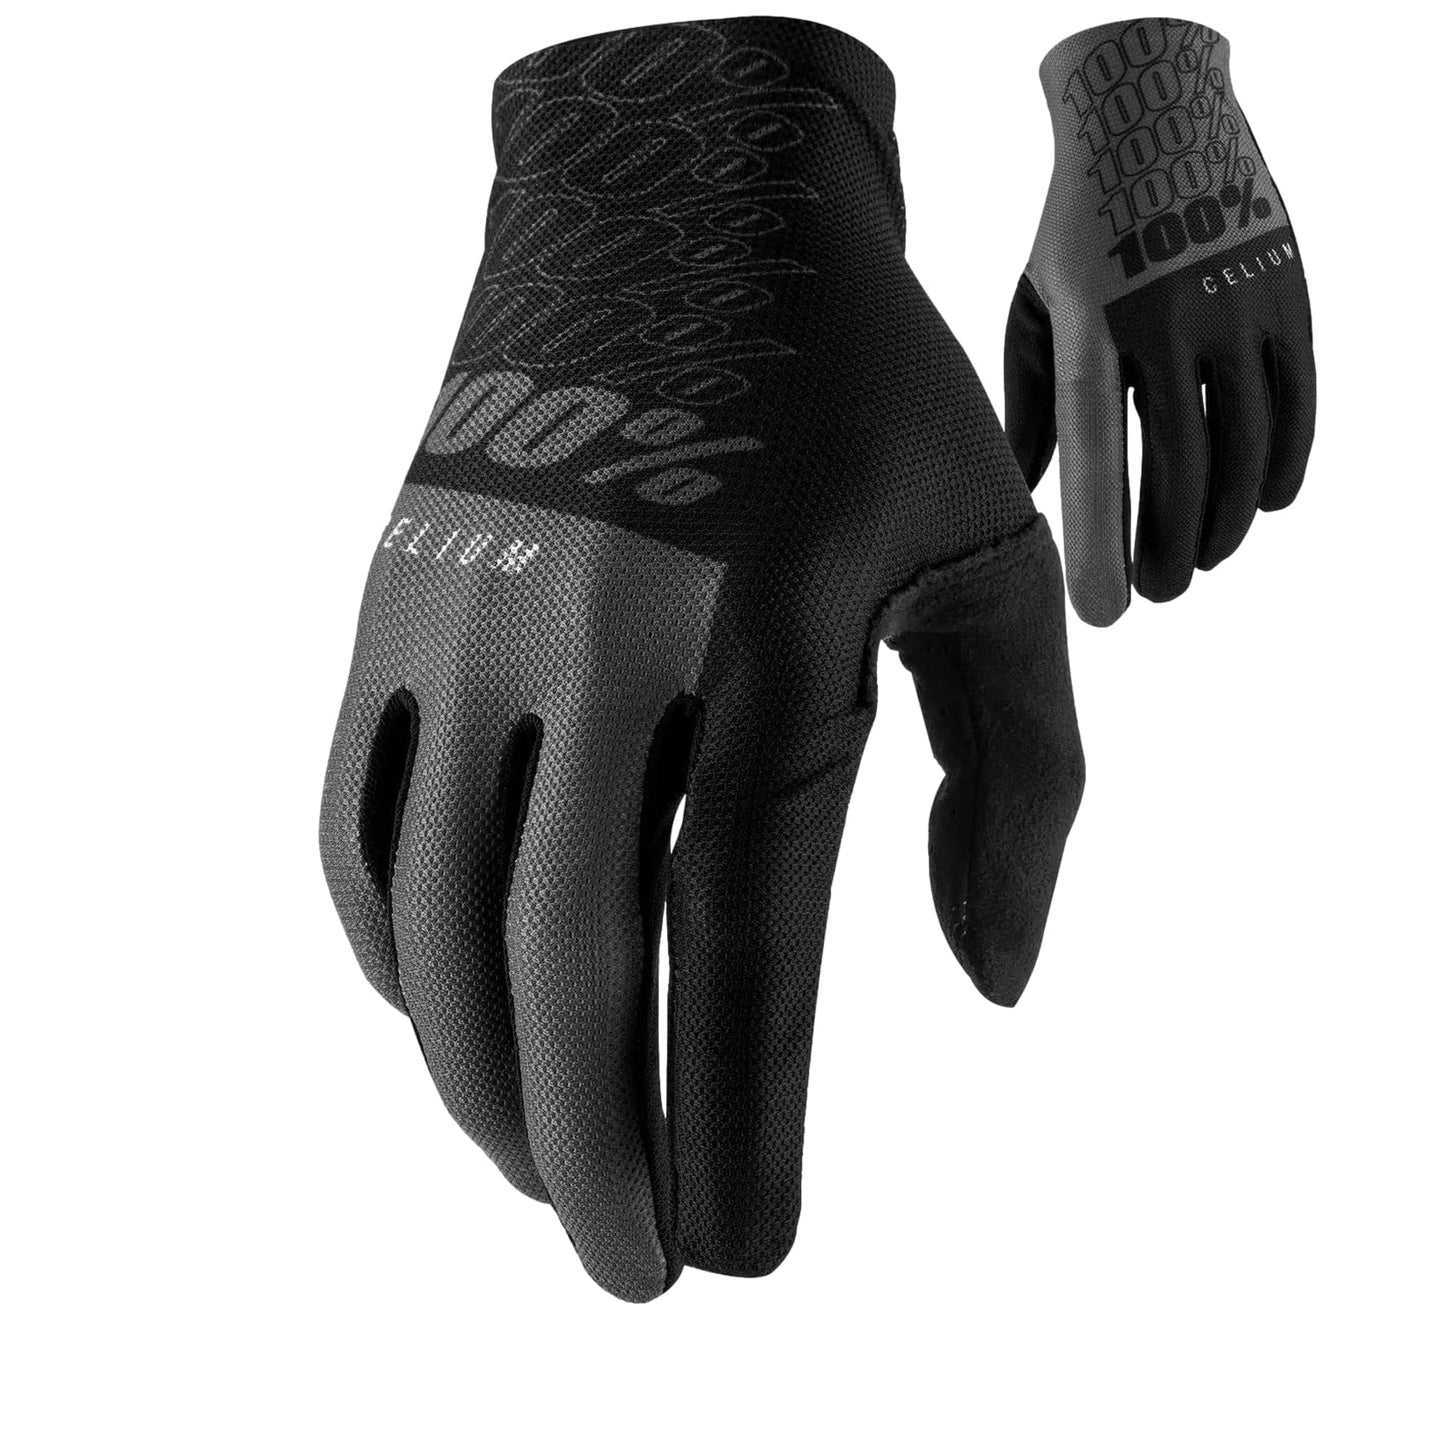 Ride 100 CELIUM Gloves Black/Grey - 2XL